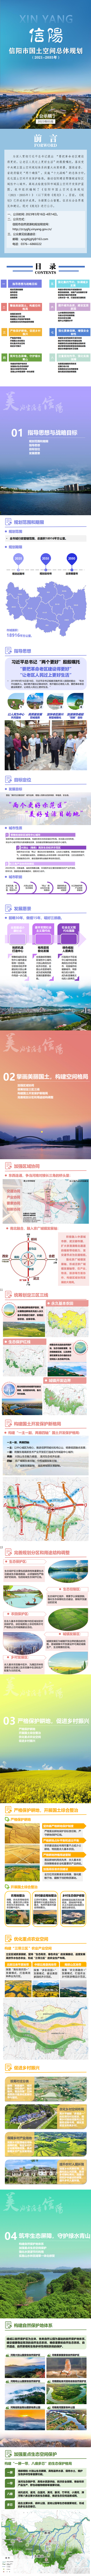 信阳市国土空间总体规划（2021-2035年）